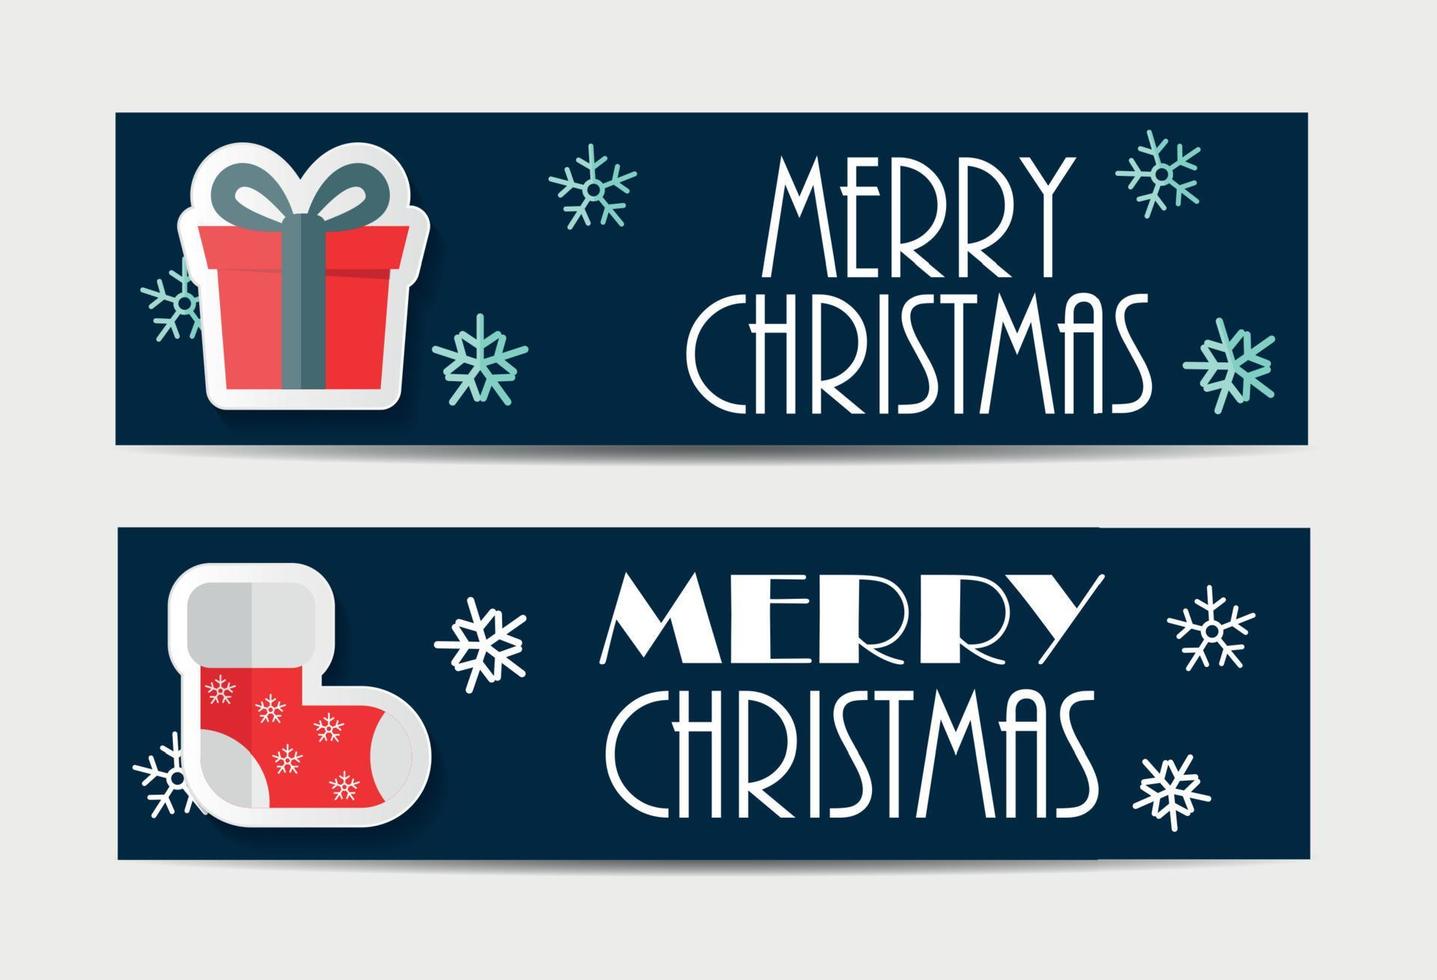 Weihnachtsschneeflocken-Website-Banner und Kartenhintergrund-Vektor-Illustration vektor